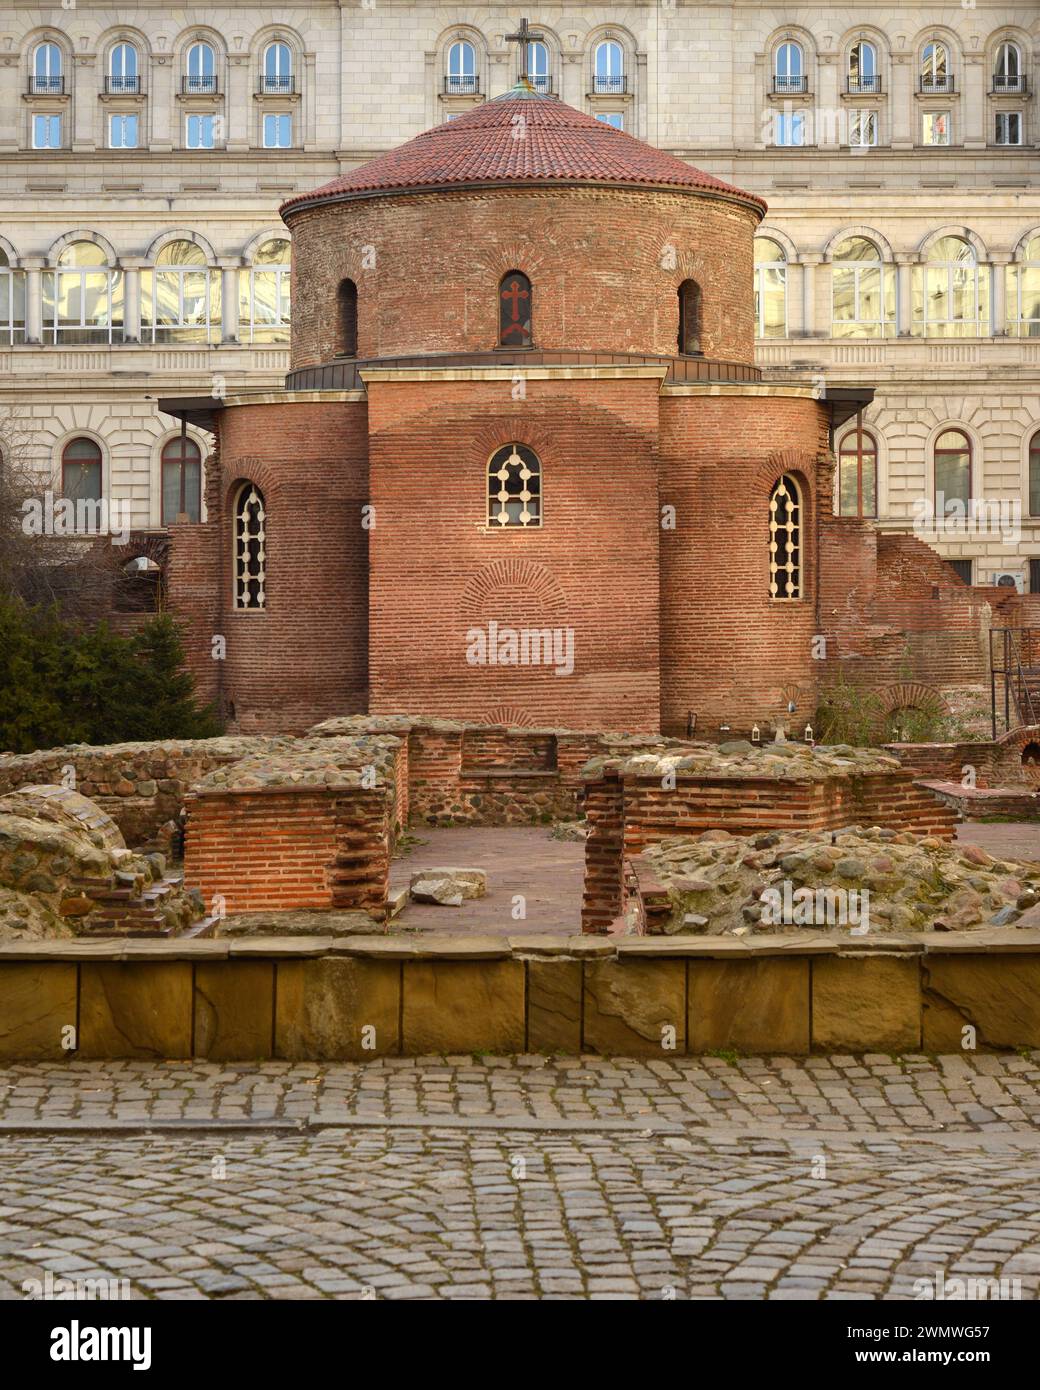 St. George Kirche oder Rotunde Kirche aus dem 3. Jahrhundert als ältestes Gebäude und Wahrzeichen in Sofia Bulgarien, Osteuropa, Balkan, EU Stockfoto